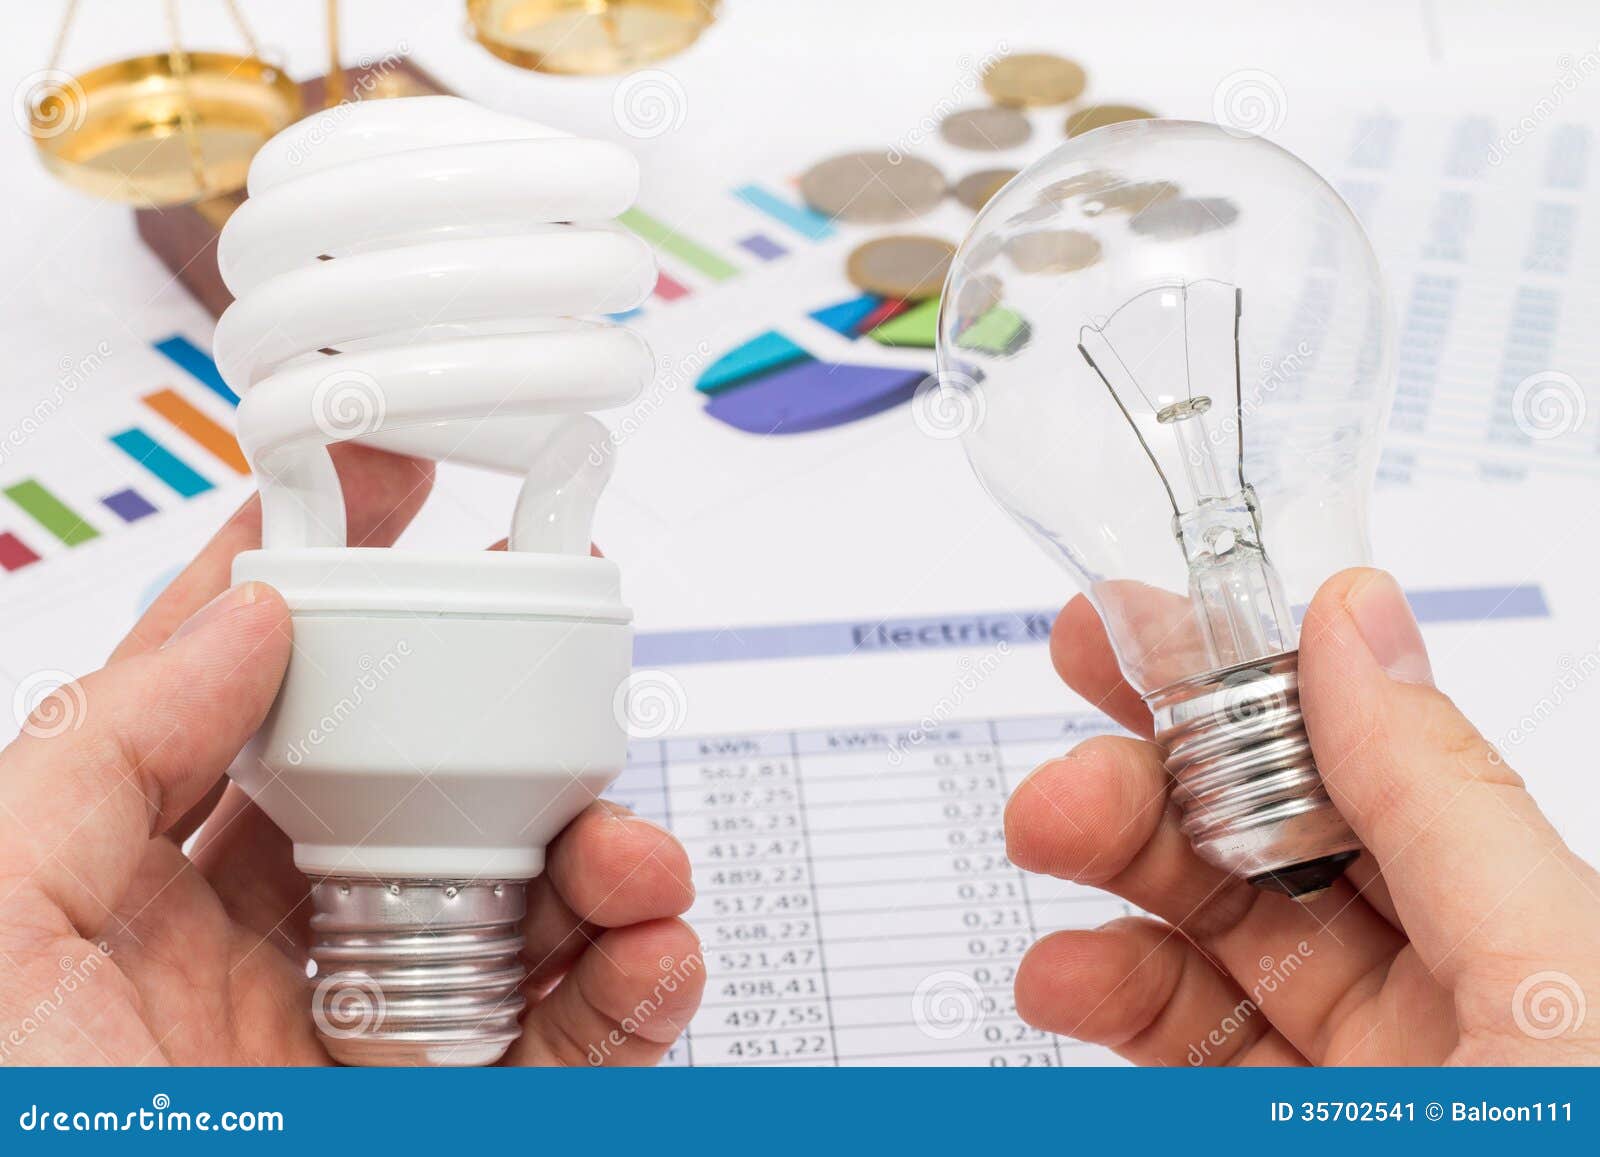 Заменить лампы накаливания на светодиодные. Энергосберегающие лампы экономия. Экономия ламп накаливания и энергосберегающая. Энергосберегающие лампы экономят. Замените лампы накаливания на энергосберегающие.